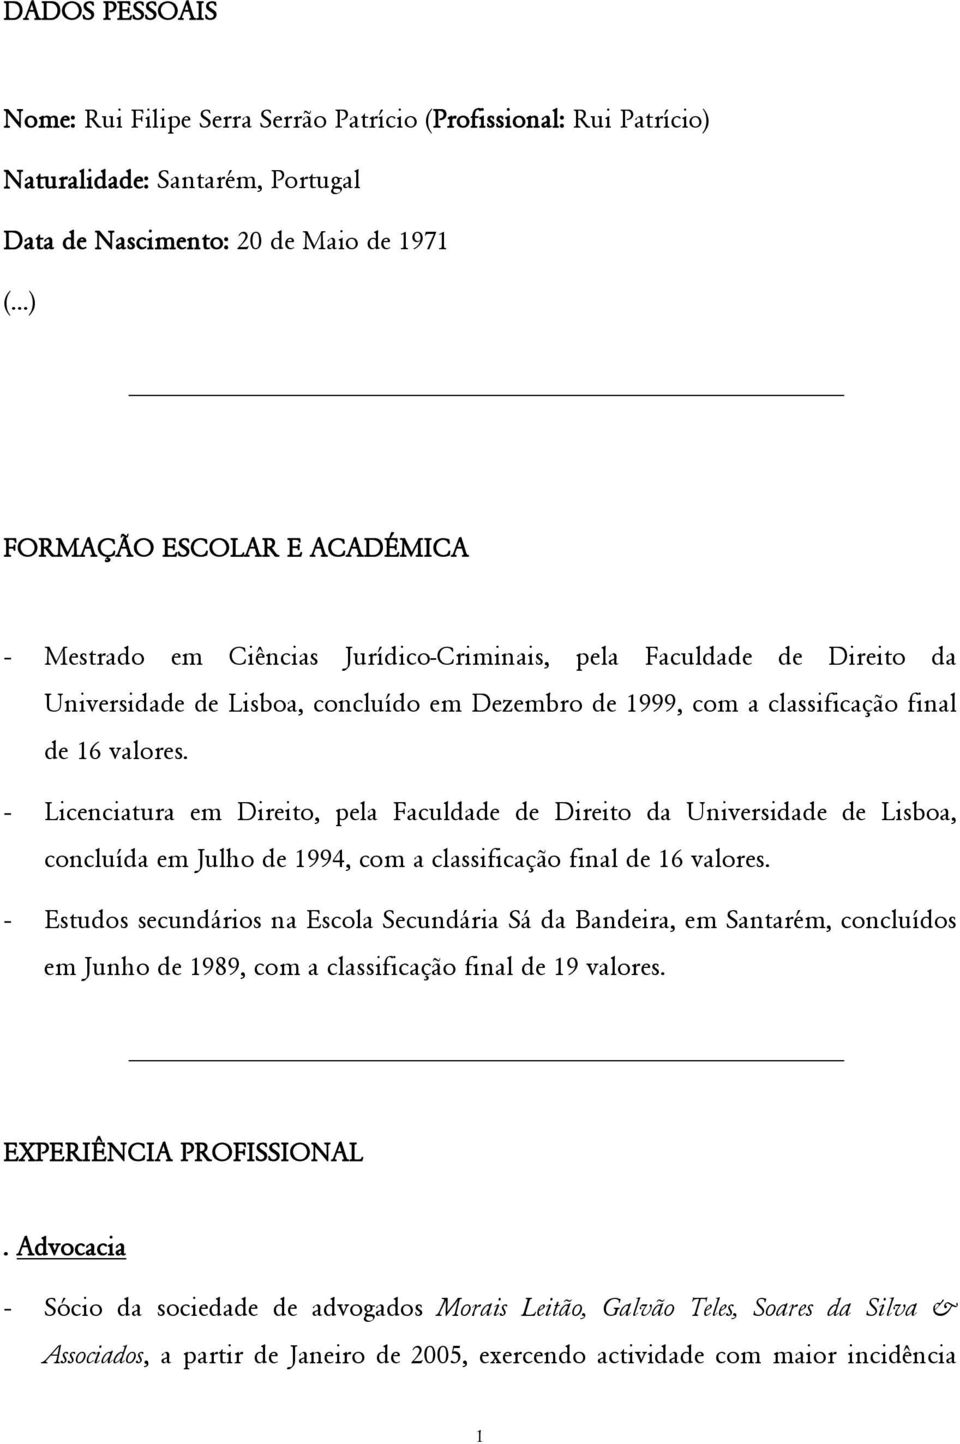 - Licenciatura em Direito, pela Faculdade de Direito da Universidade de Lisboa, concluída em Julho de 1994, com a classificação final de 16 valores.